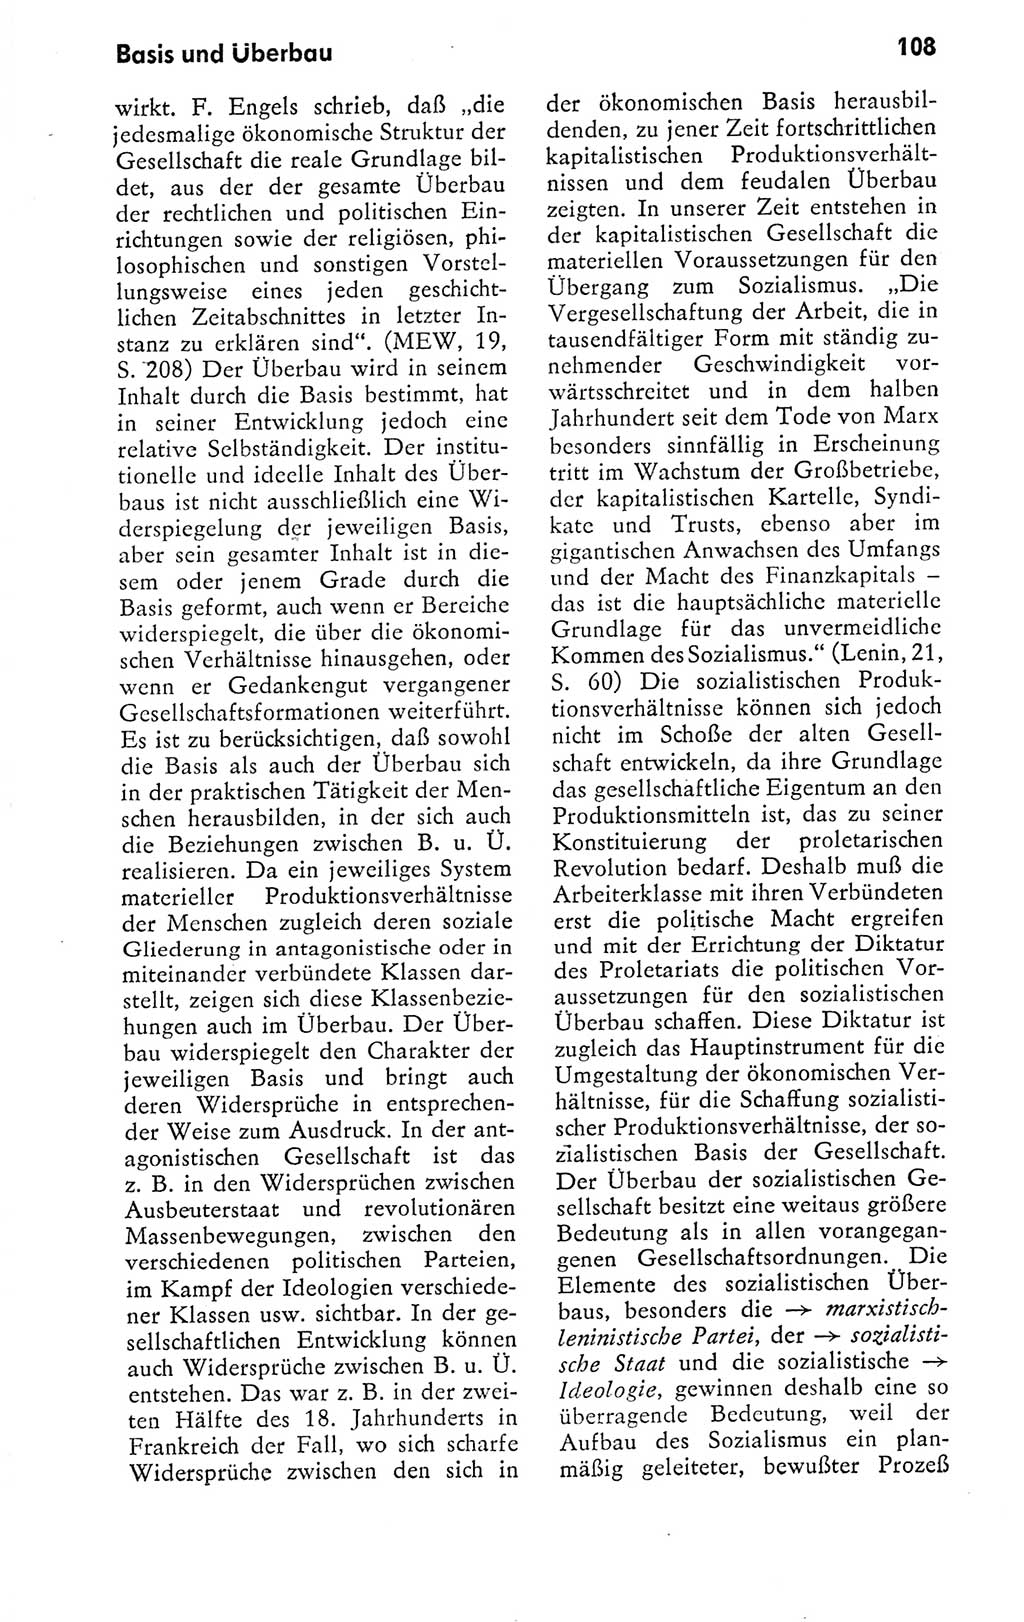 Kleines politisches Wörterbuch [Deutsche Demokratische Republik (DDR)] 1978, Seite 108 (Kl. pol. Wb. DDR 1978, S. 108)